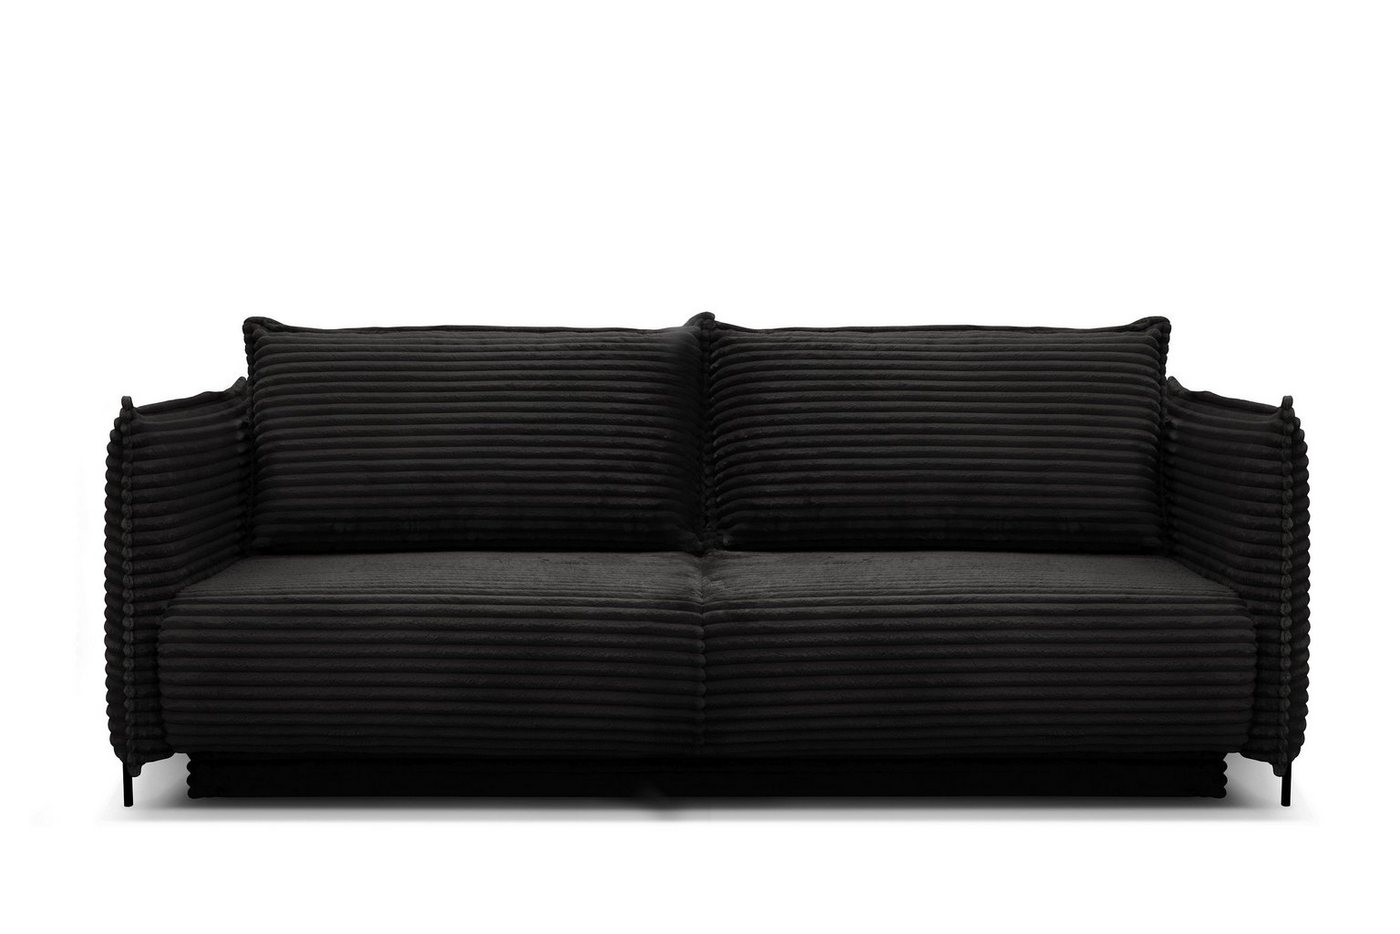 Möbel für Dich Sofa Bettsofa Amalfi mit Cord bezogen sowie mit Bettkasten und Farbauswahl, Cordbezug von Möbel für Dich